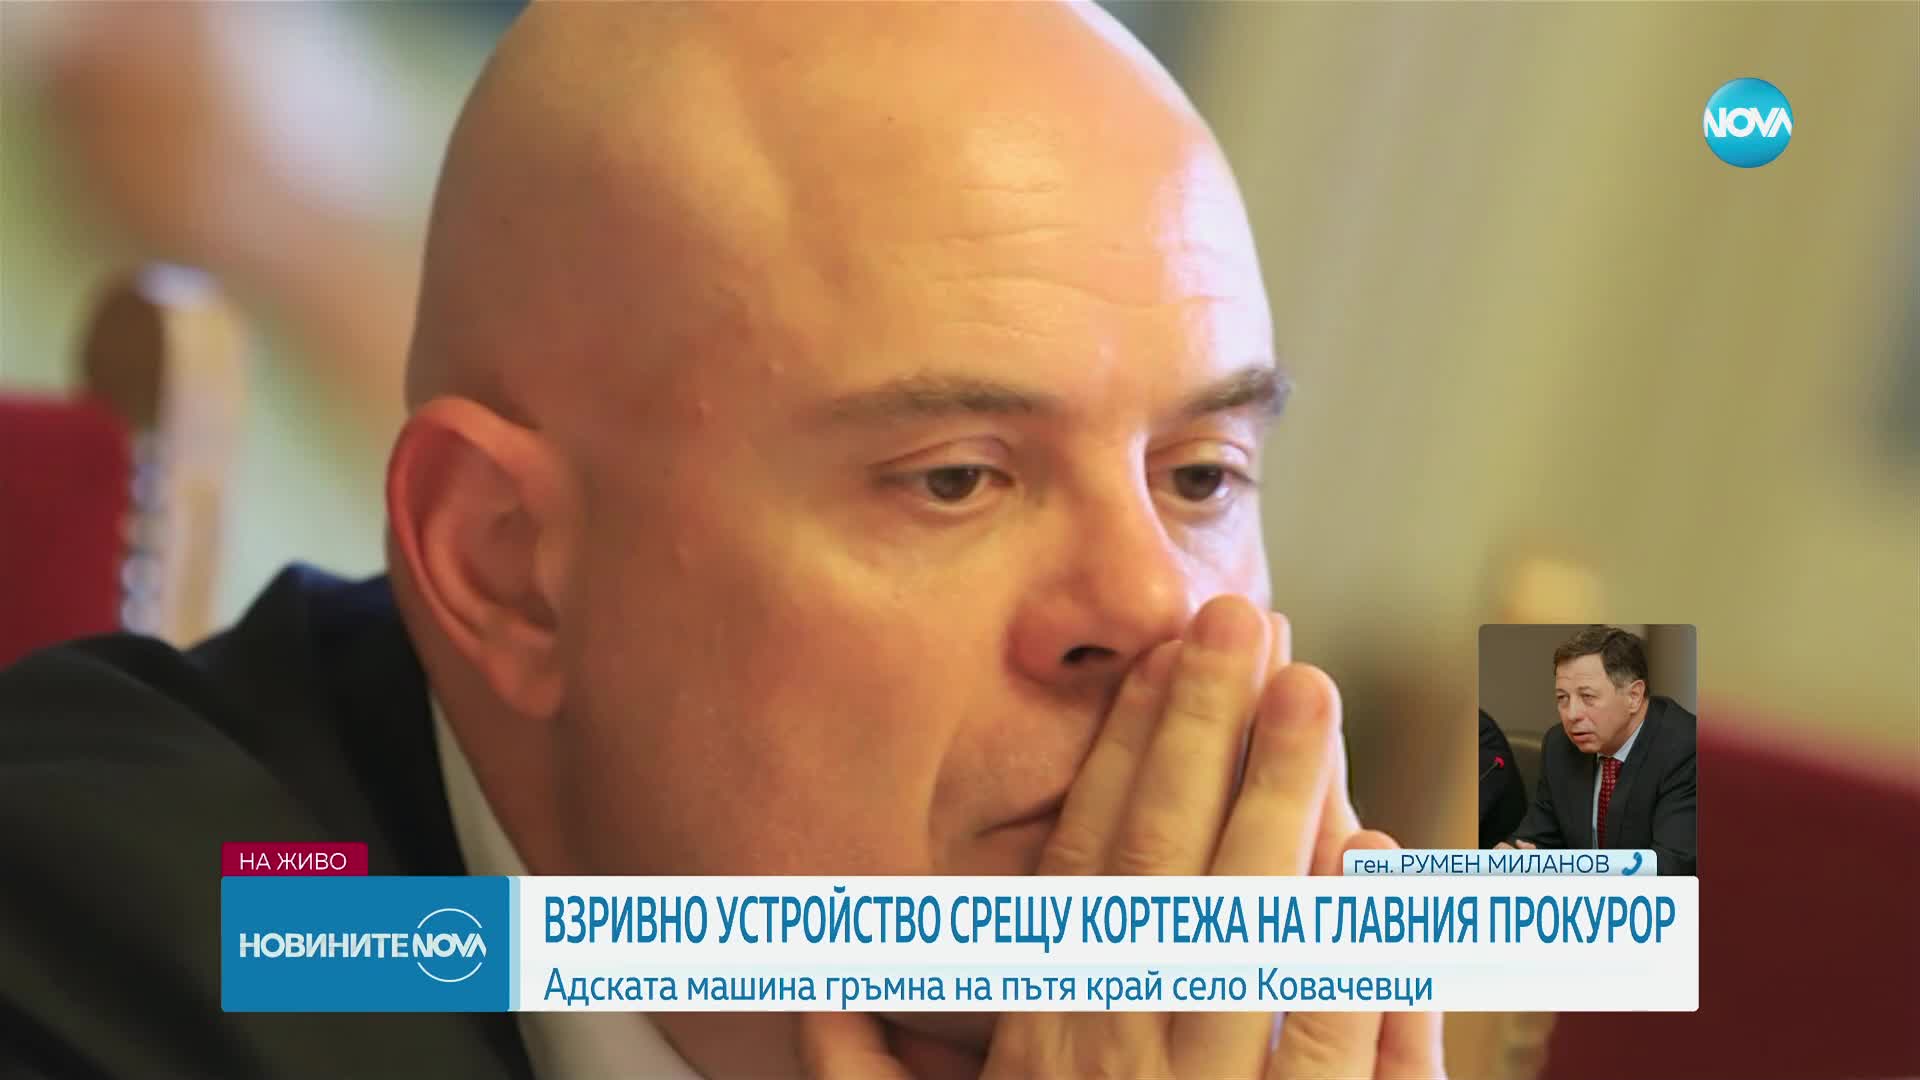 Румен Миланов: Ако бомбата е задействана електронно, значи е имало информация за маршрута